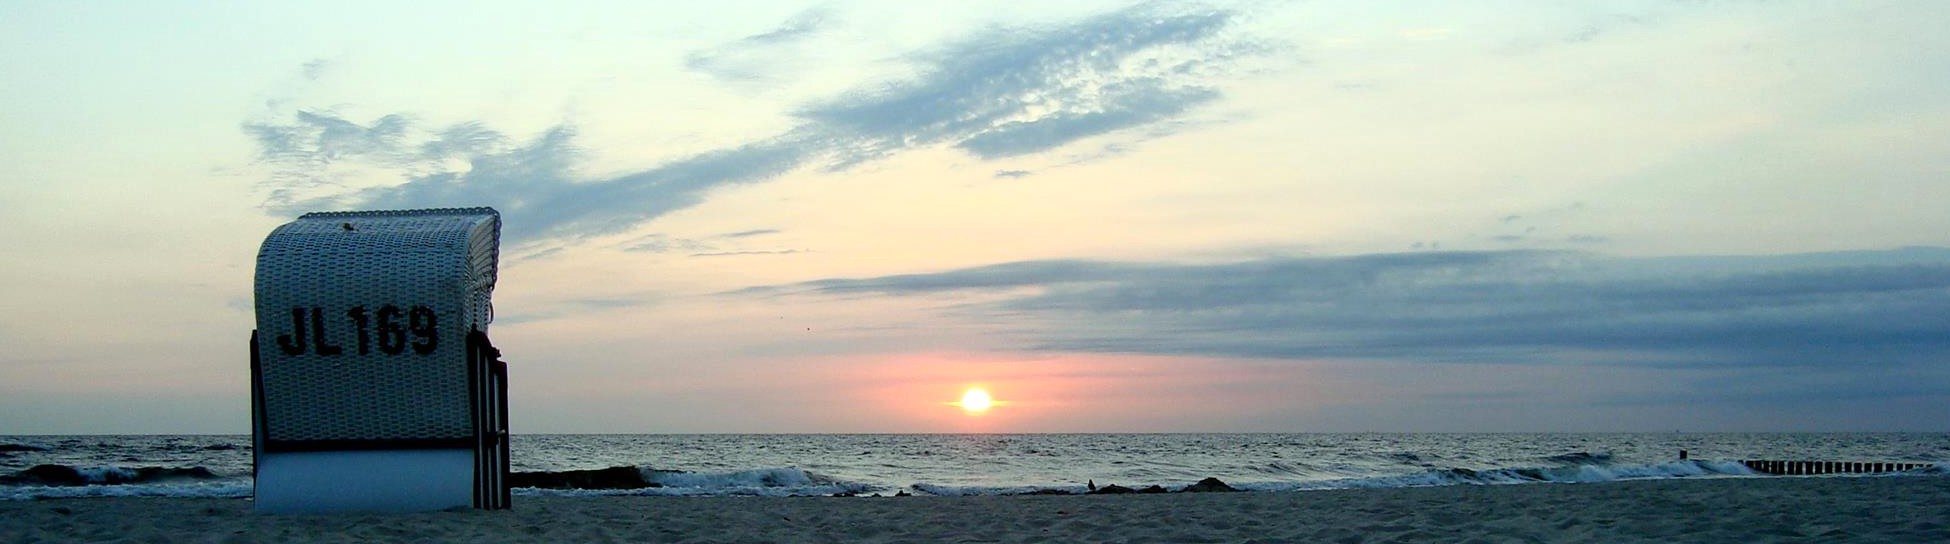 Strandkorb am Meer bei Sonnenaufgang